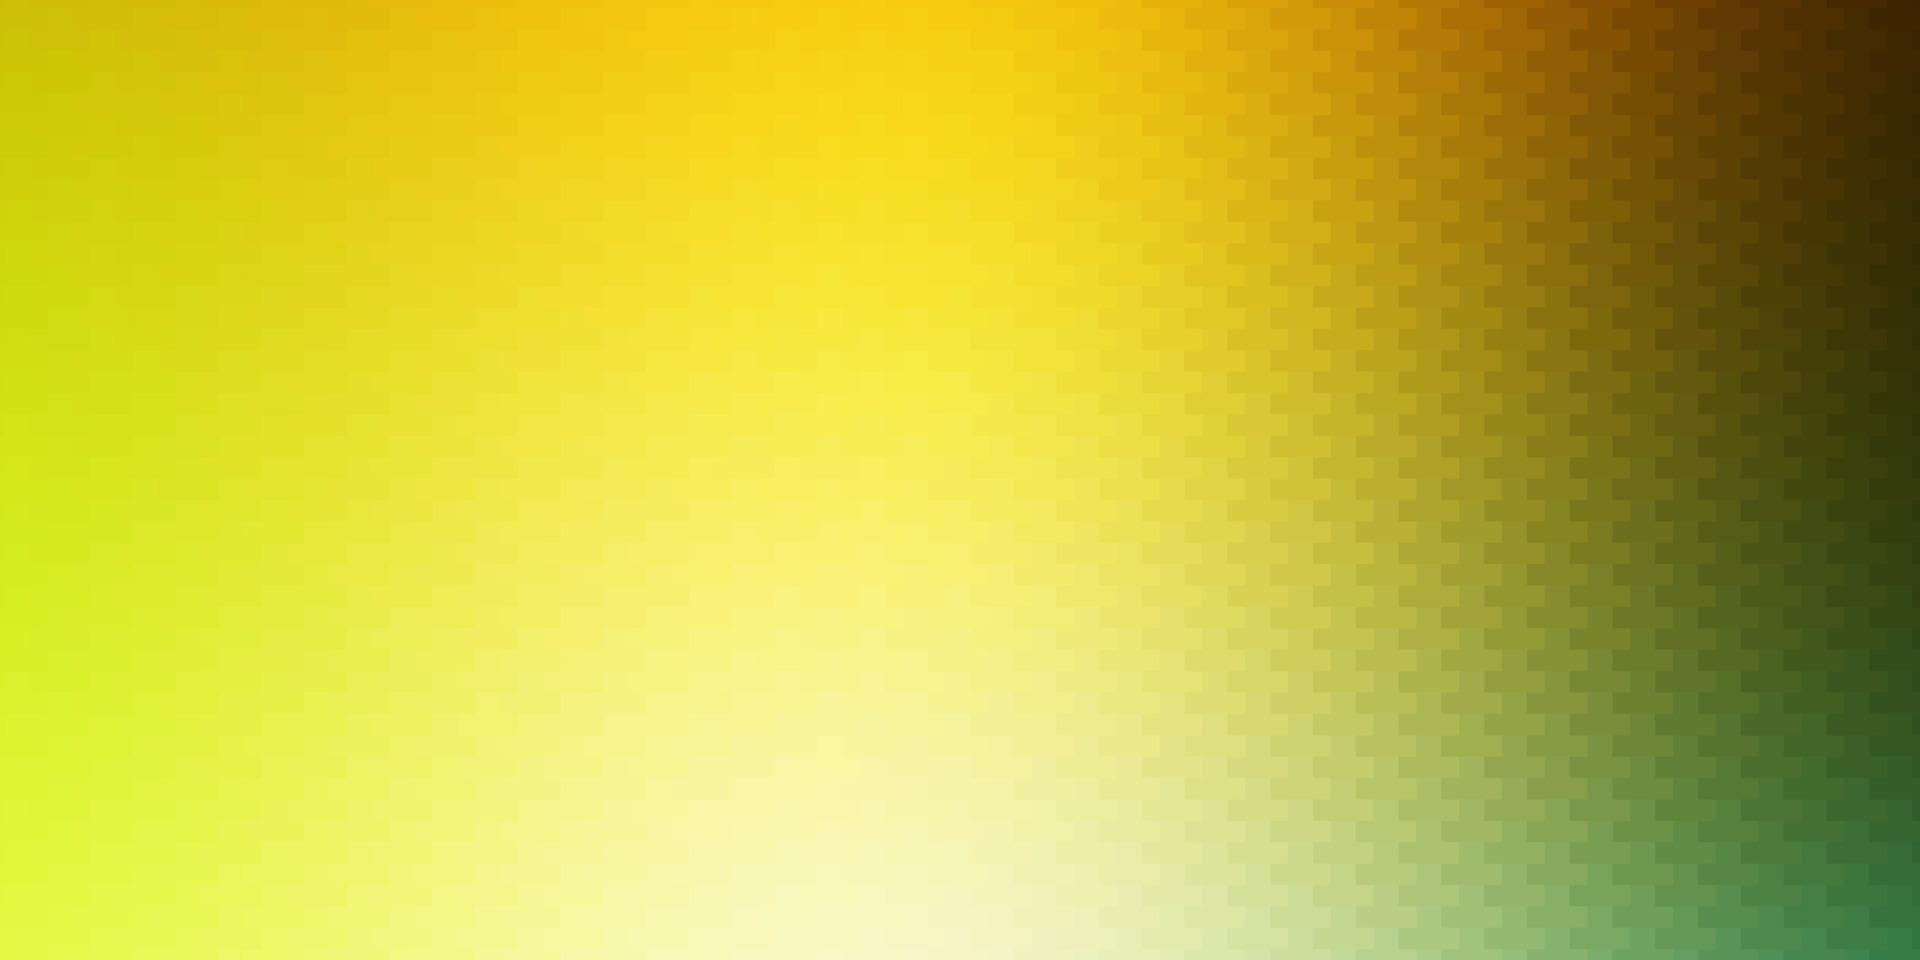 ljusgrön, gul vektorlayout med linjer, rektanglar. vektor